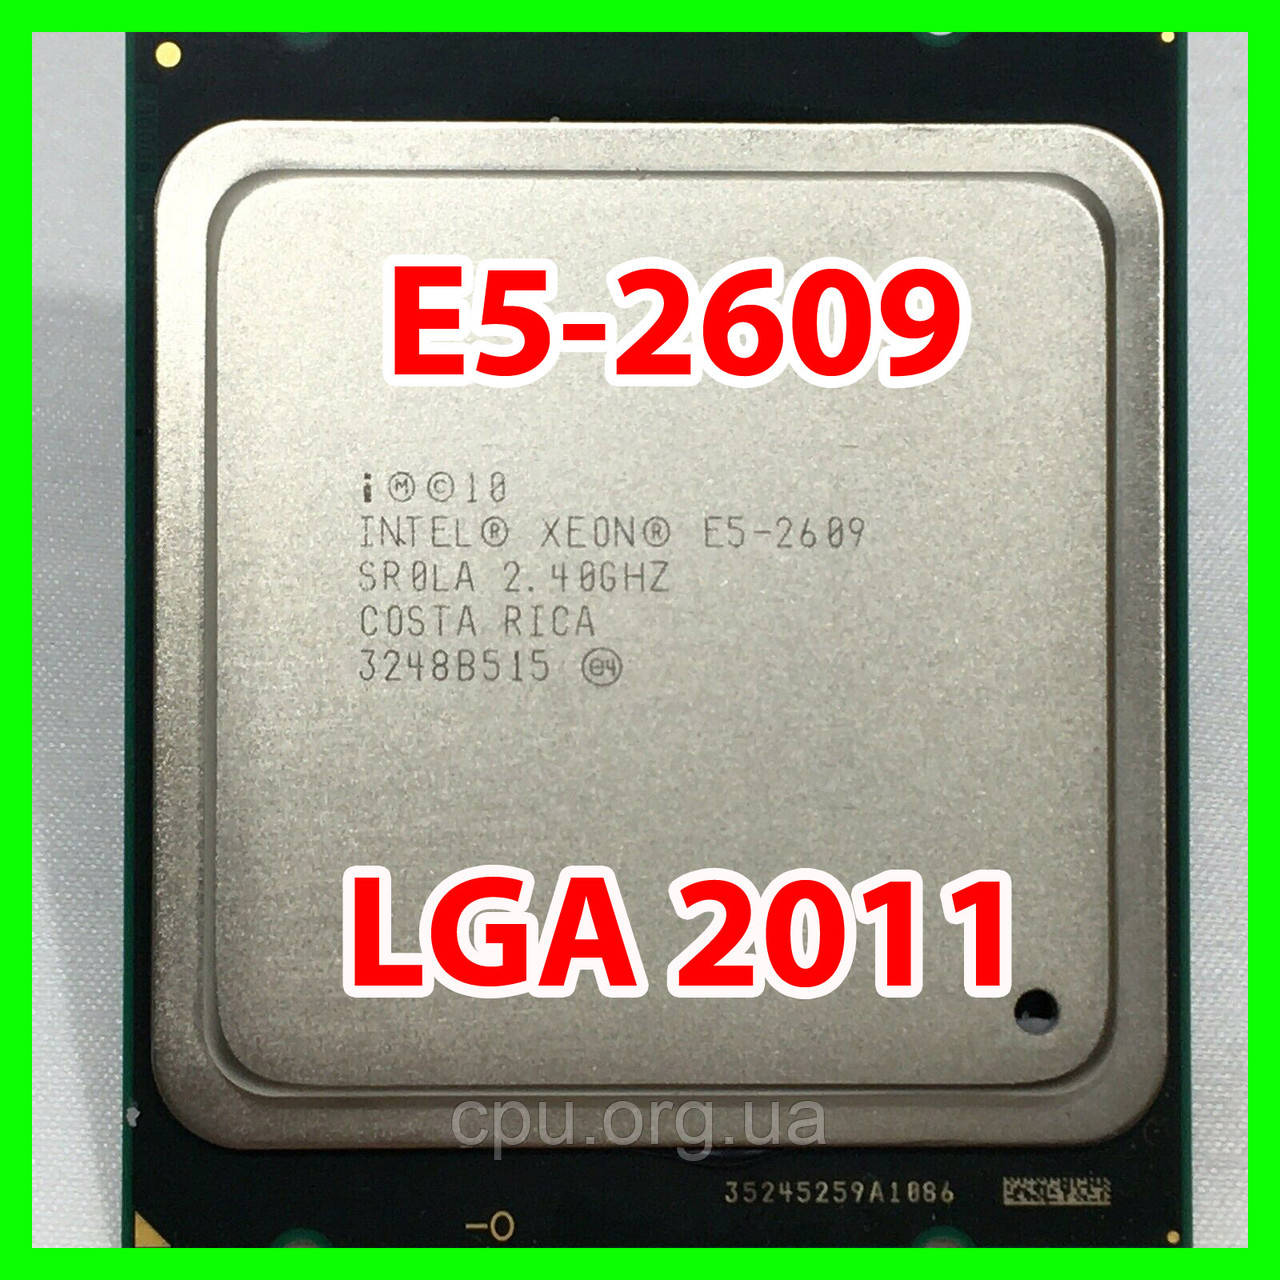 Процесор Intel Xeon E5-2609 LGA 2011 (SR0LA) 4 ядра 2,40 Ghz / 10M SandyBridge